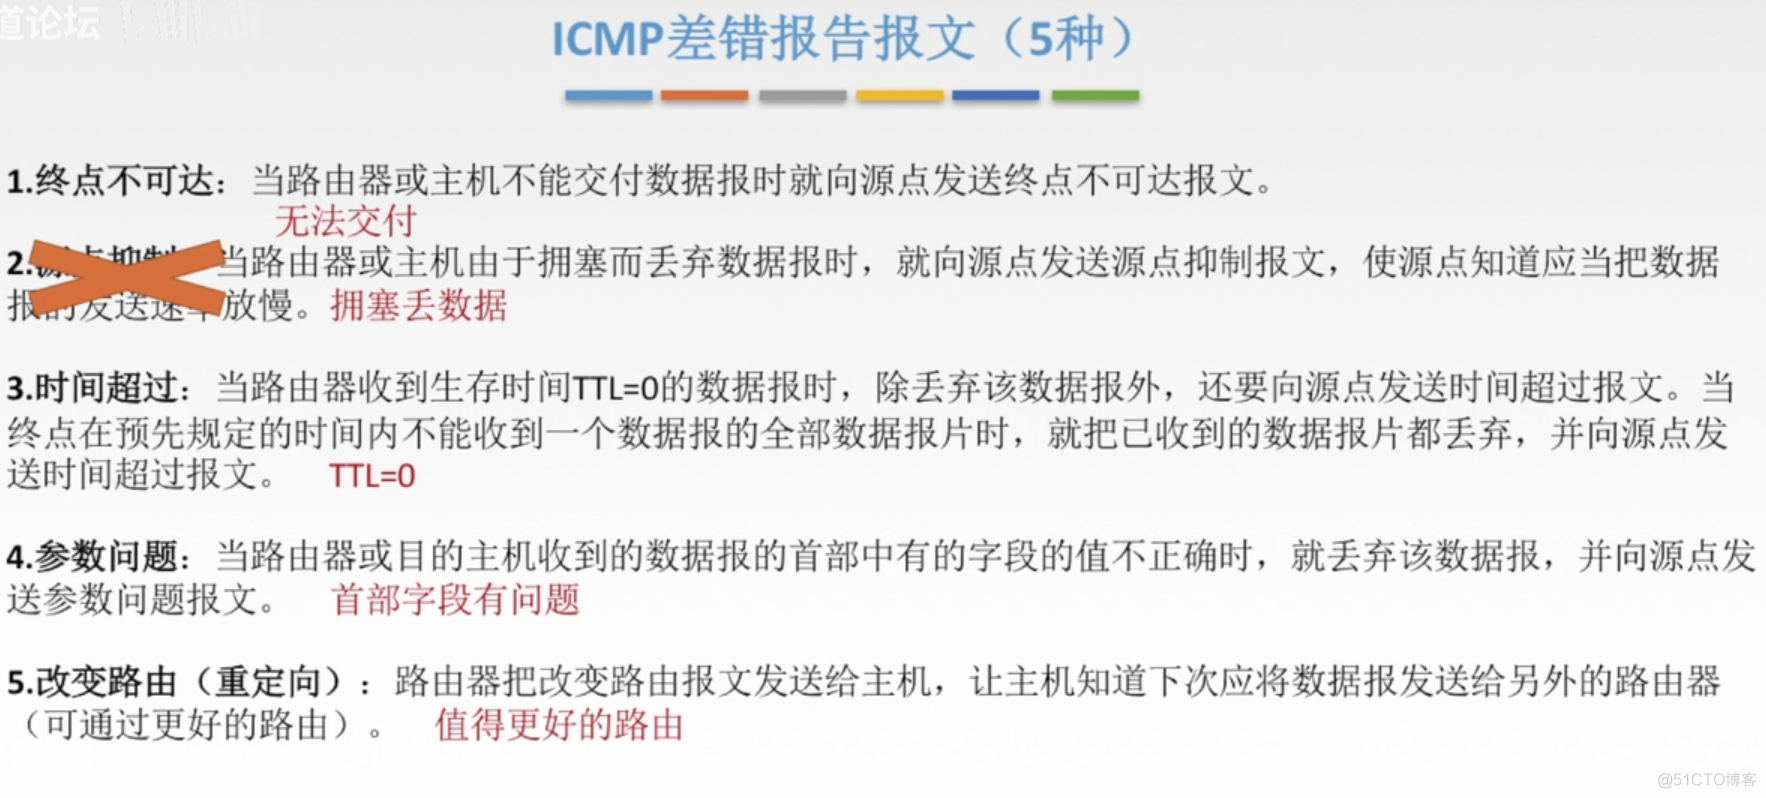 ARP、DHCP和ICMP协议_数据_05